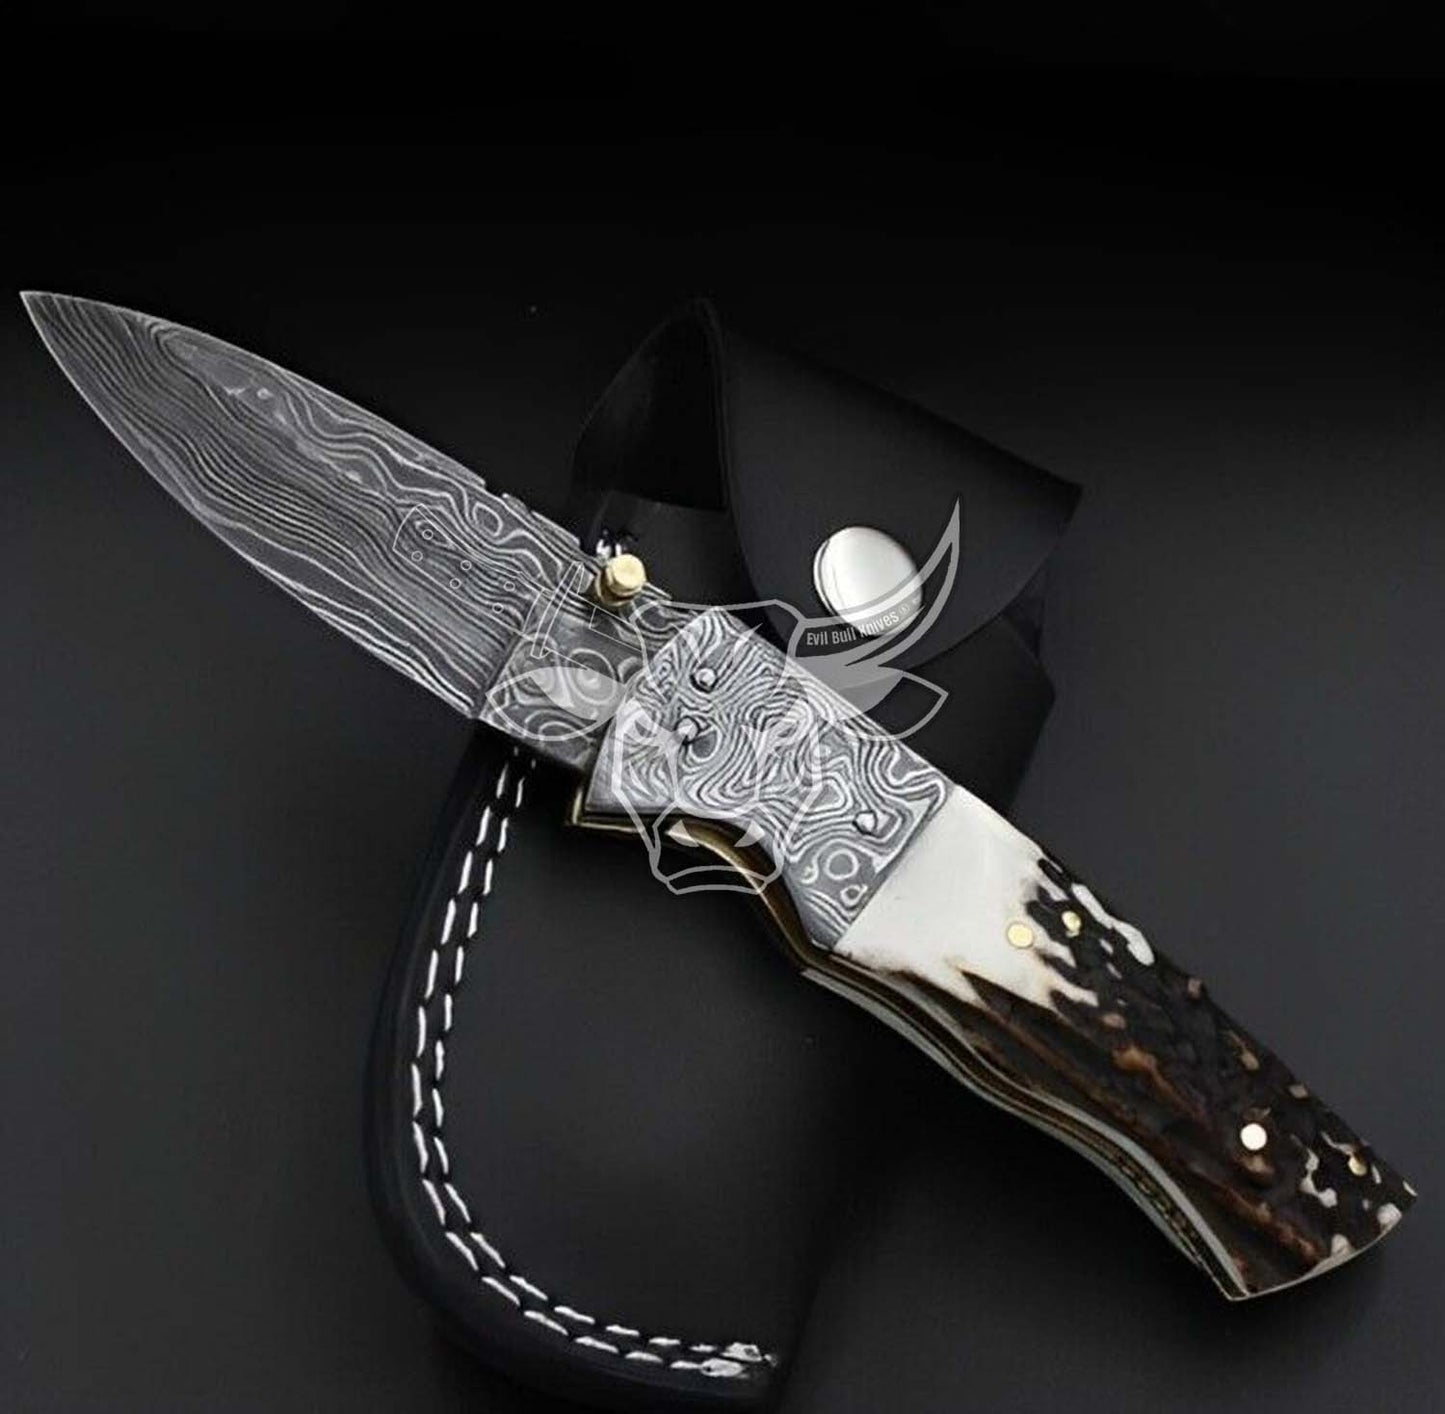 EBK-86 Custom Handmade Damascus Folding Pocket Knife Stag Horn Handle. Anniversary Gift, Birthday Gift , Christmas Gift for him